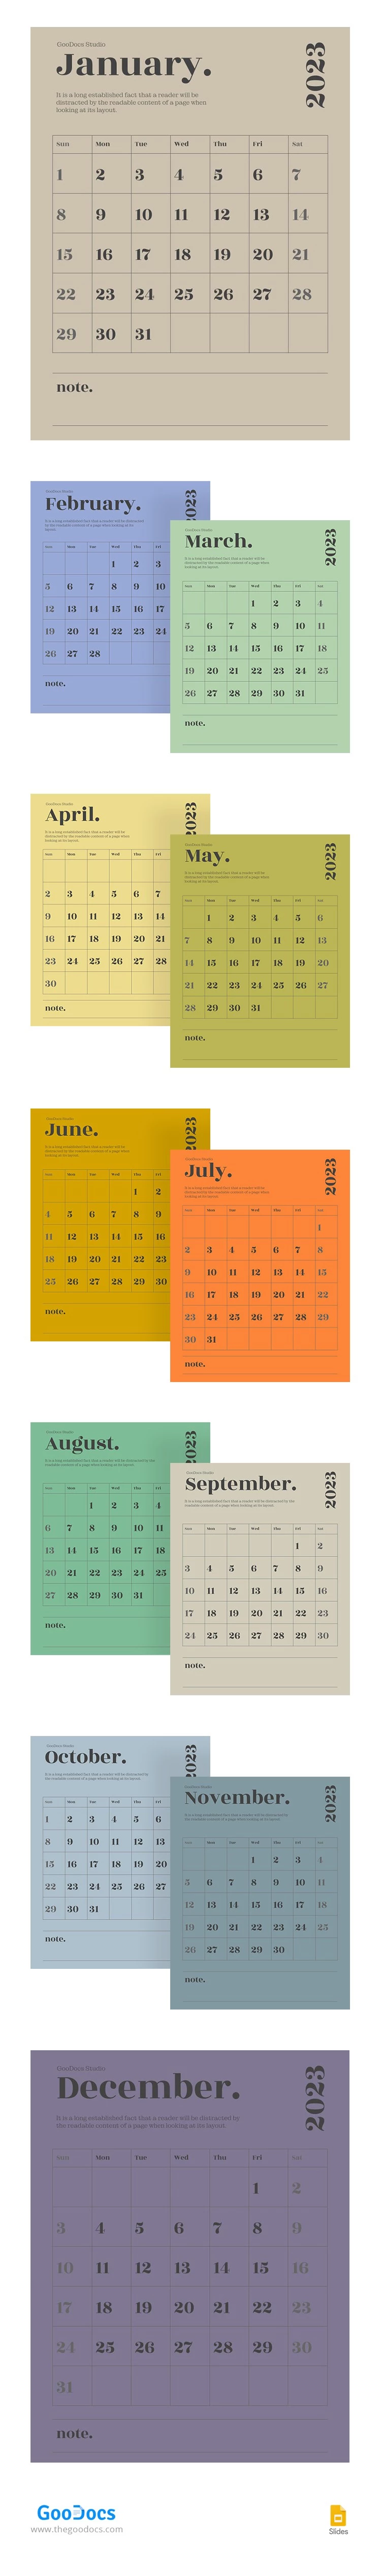 Calendario scolastico moderno - free Google Docs Template - 10064654